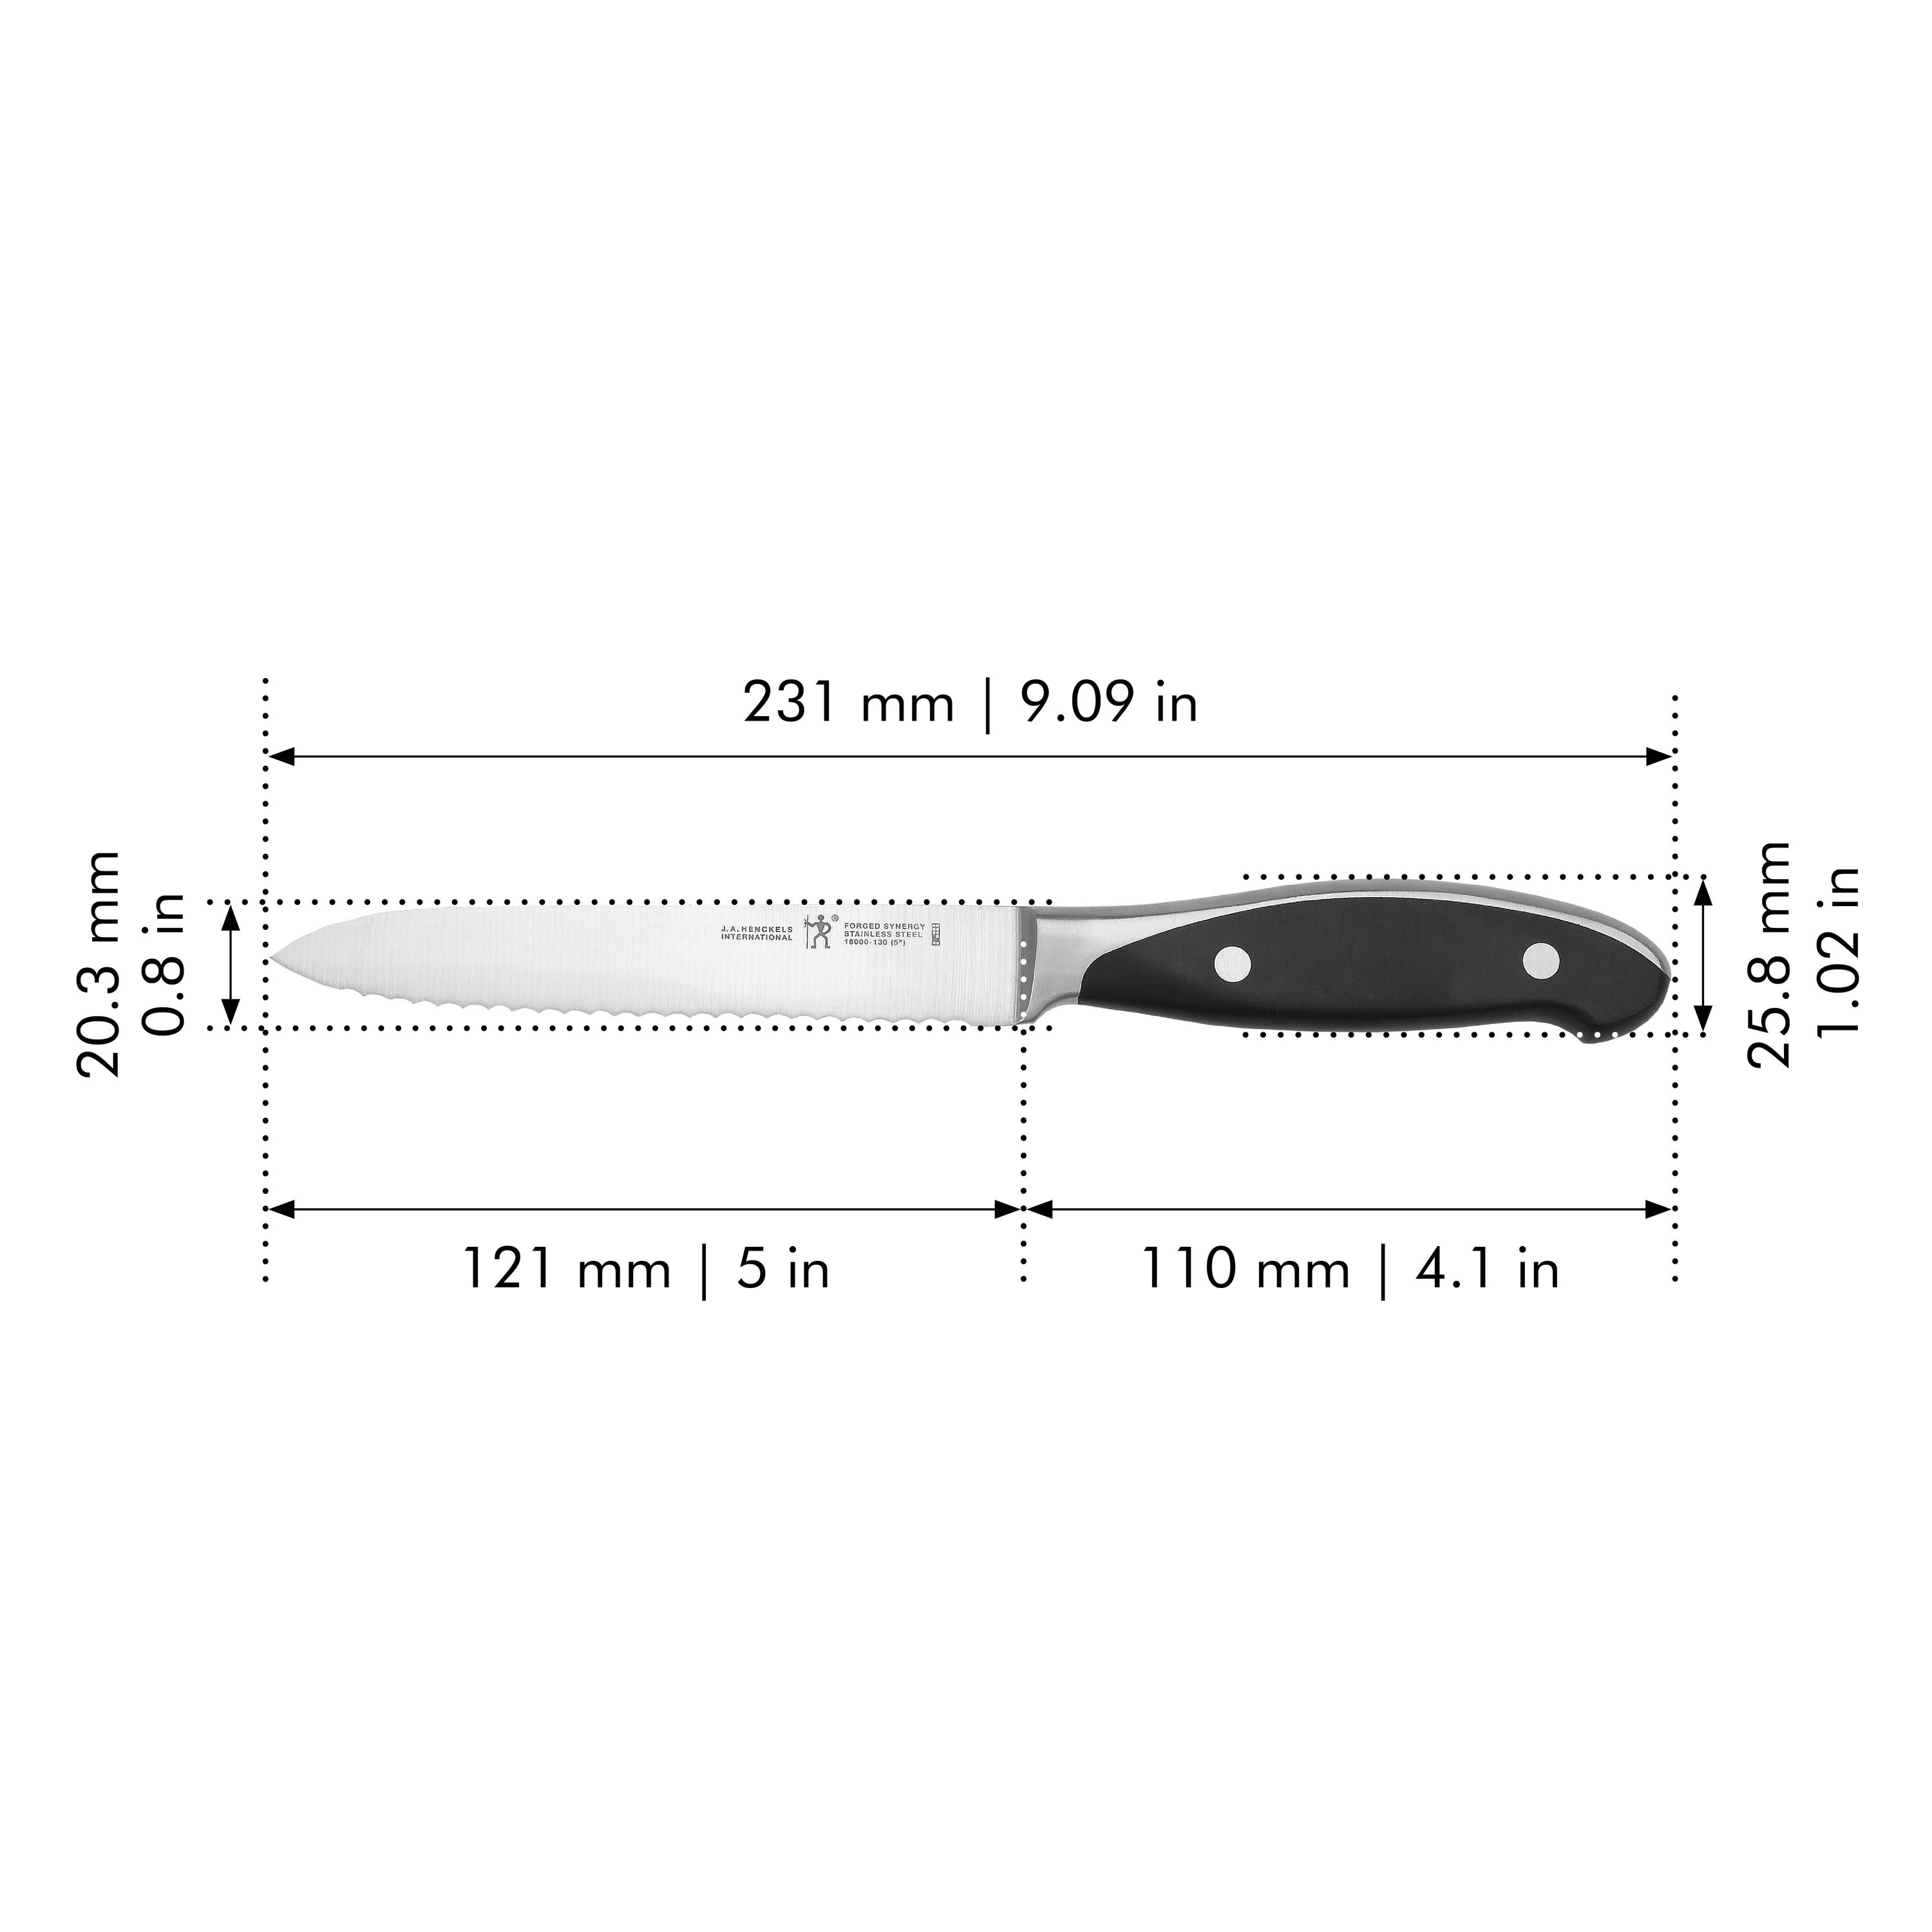 Henckels Dynamic 5-inch Serrated Utility Knife, 5-inch - Kroger